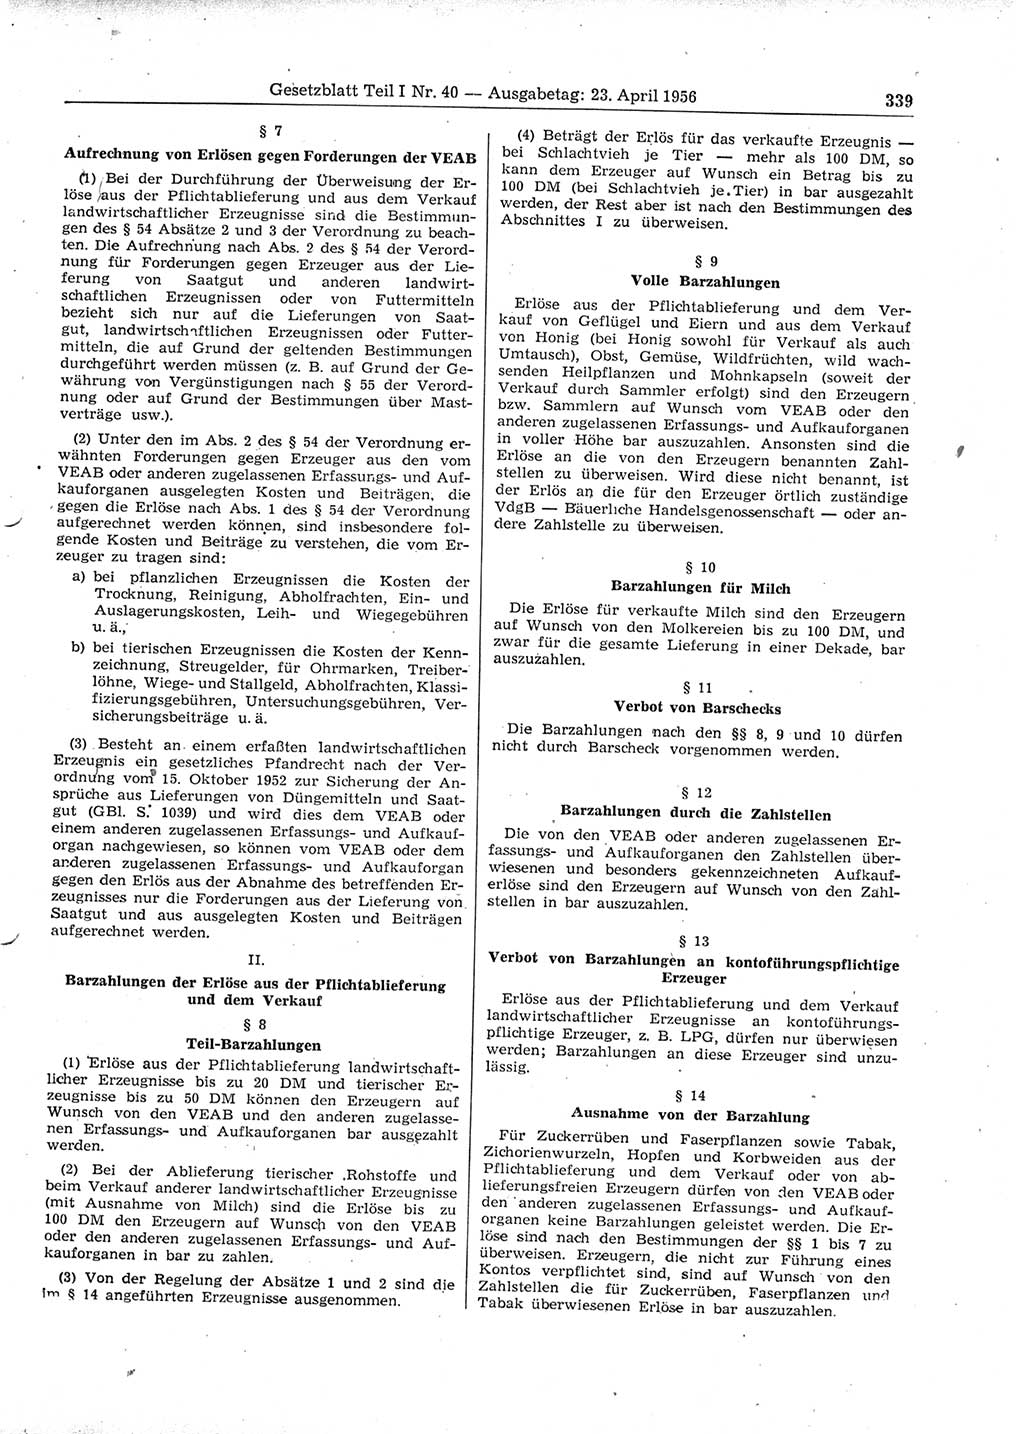 Gesetzblatt (GBl.) der Deutschen Demokratischen Republik (DDR) Teil Ⅰ 1956, Seite 339 (GBl. DDR Ⅰ 1956, S. 339)